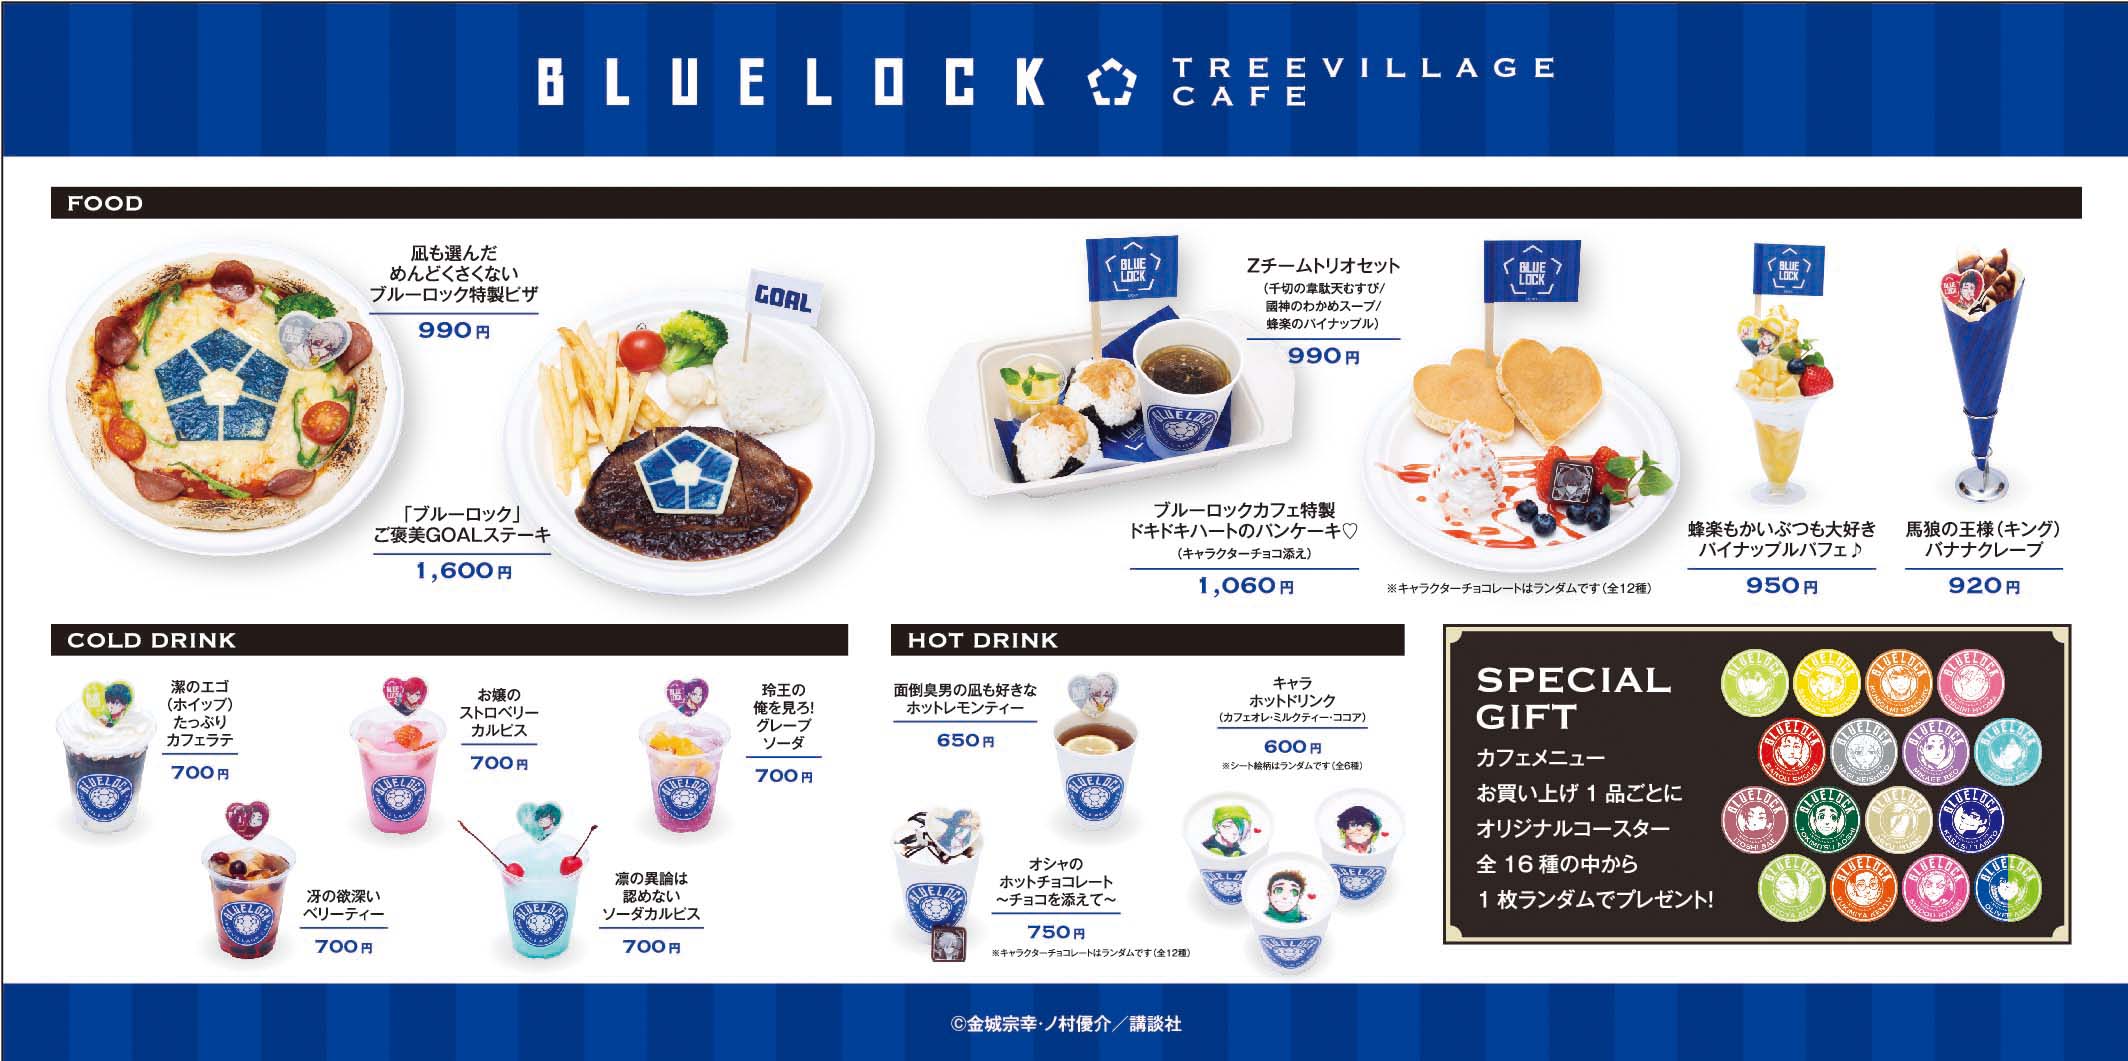 漫画『ブルーロック』キャラクターをイメージしたオリジナルメニューが楽しめる期間限定カフェ&ショップが東京ソラマチ(R)「ツリービレッジ」にオープン！のサブ画像3